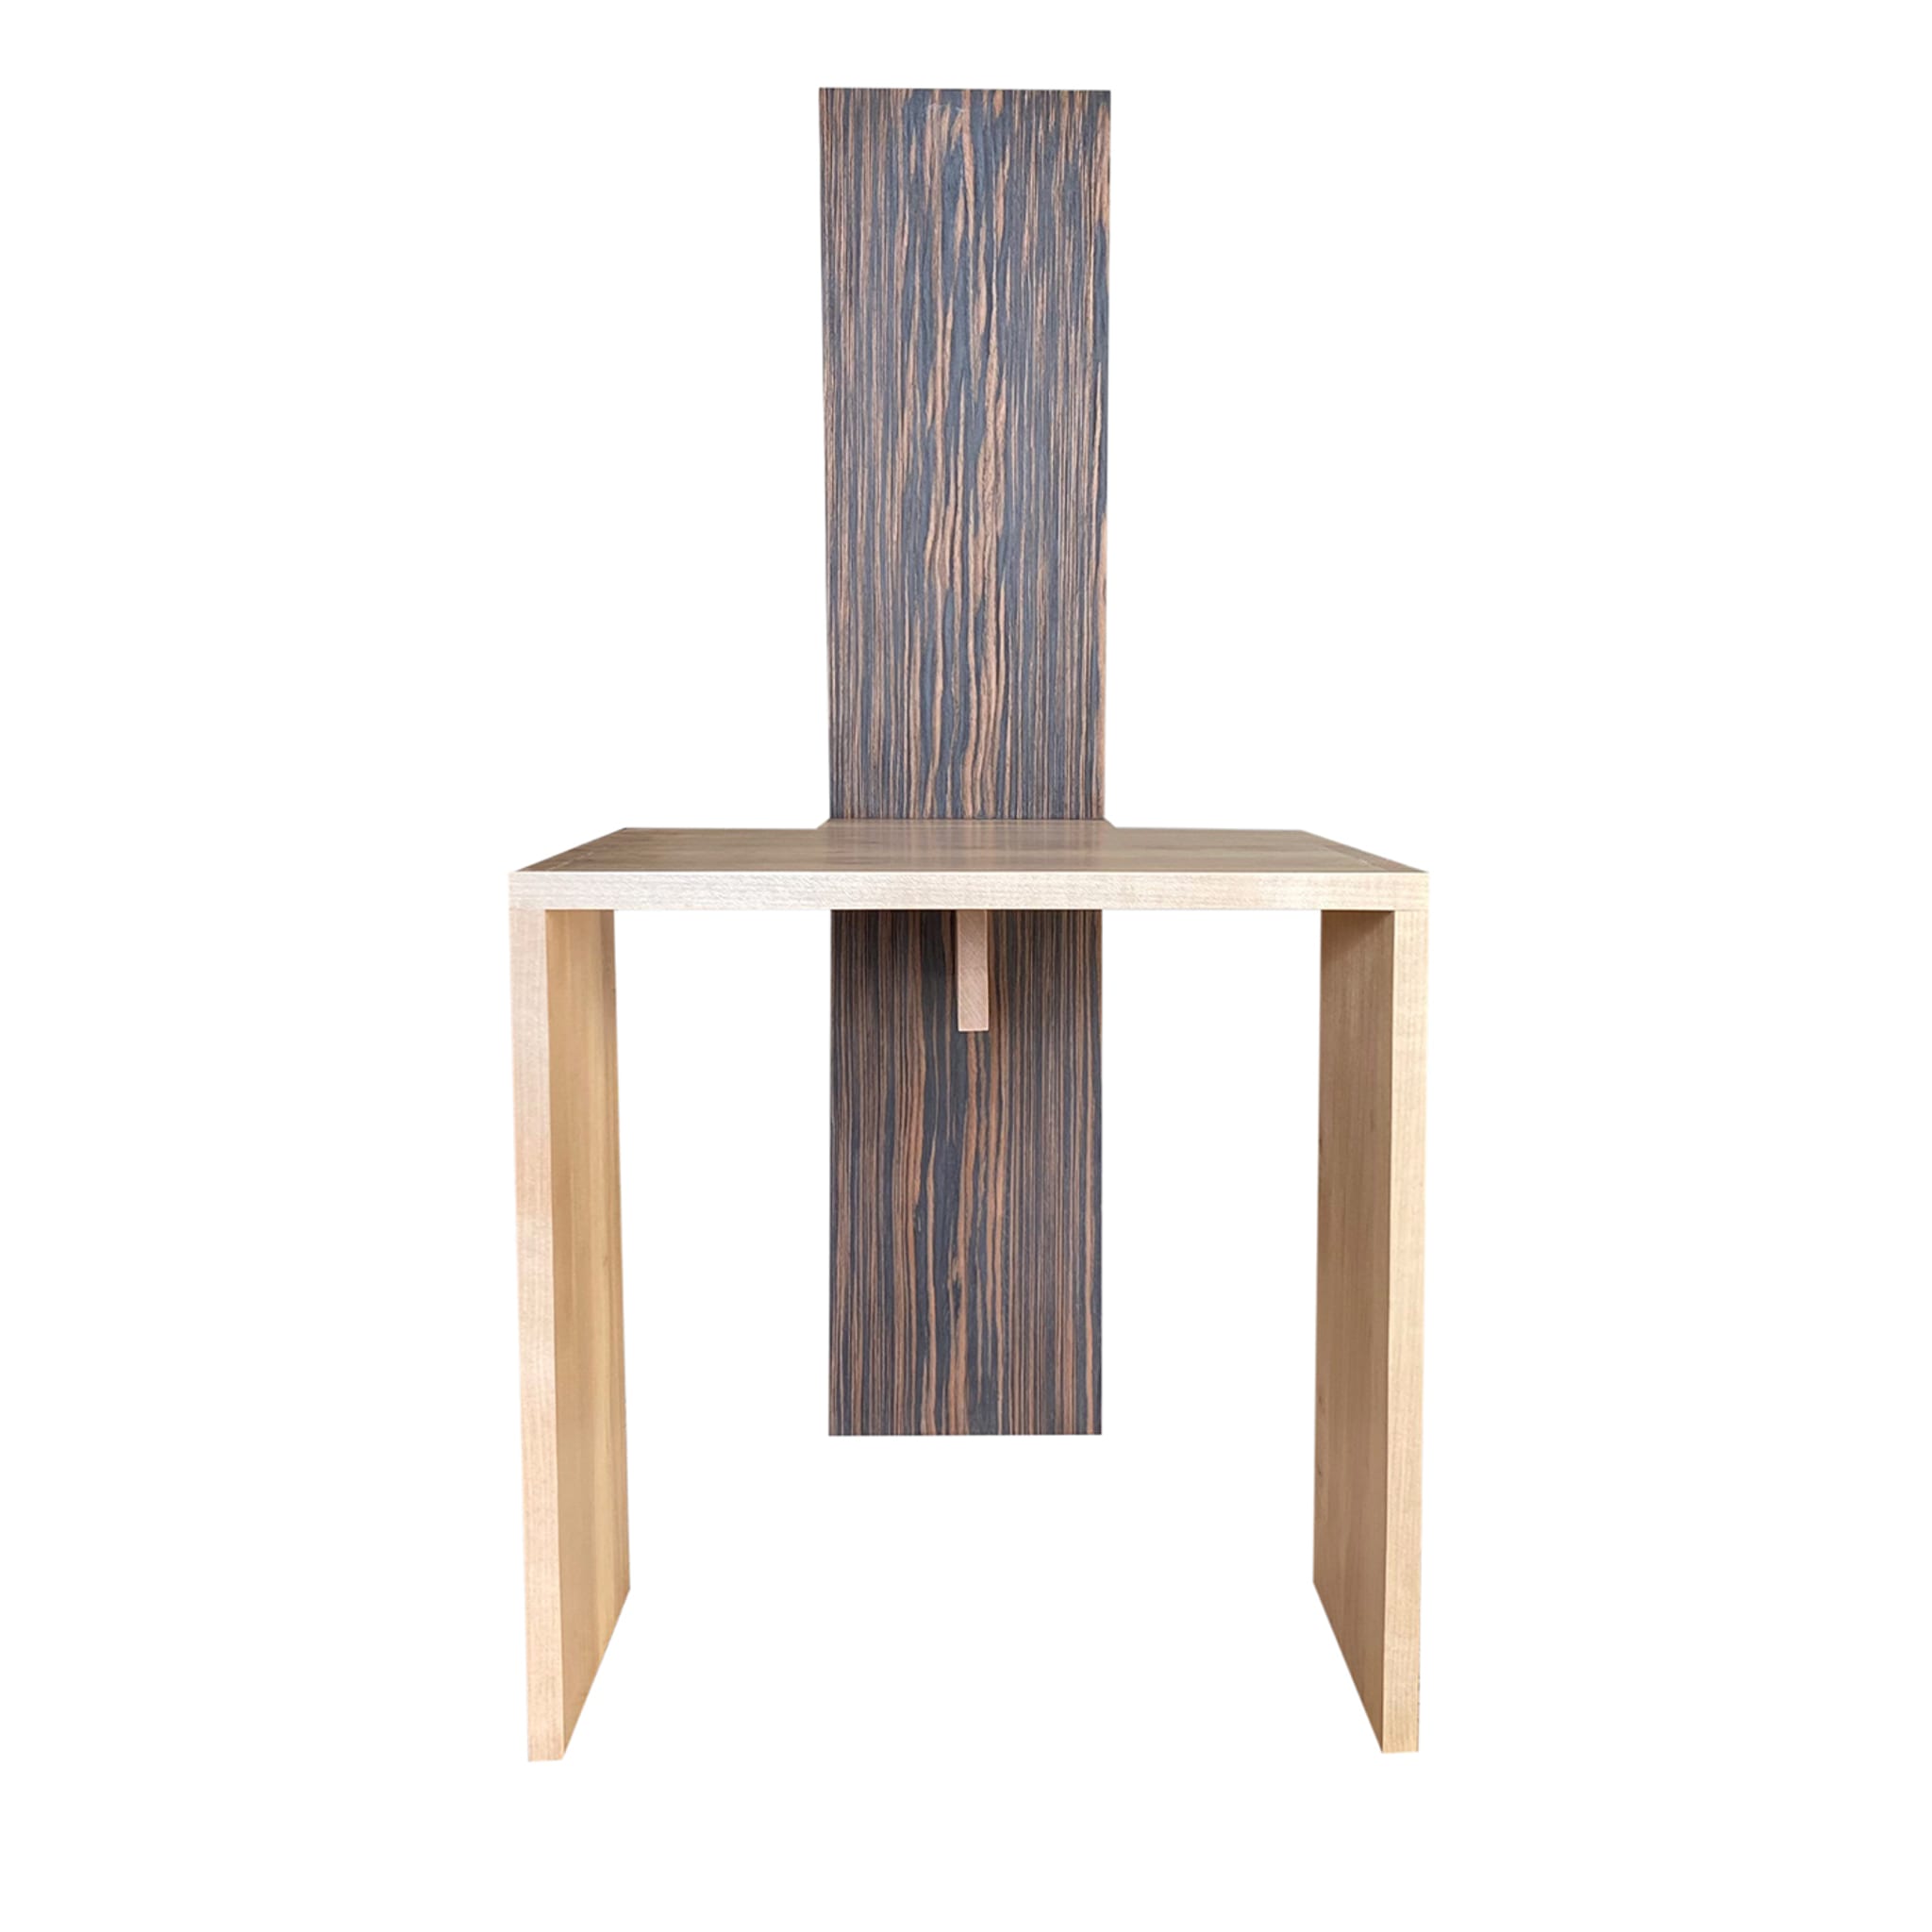 Cimabue Stuhl Limited Edition von Ferdinando Meccani - Hauptansicht